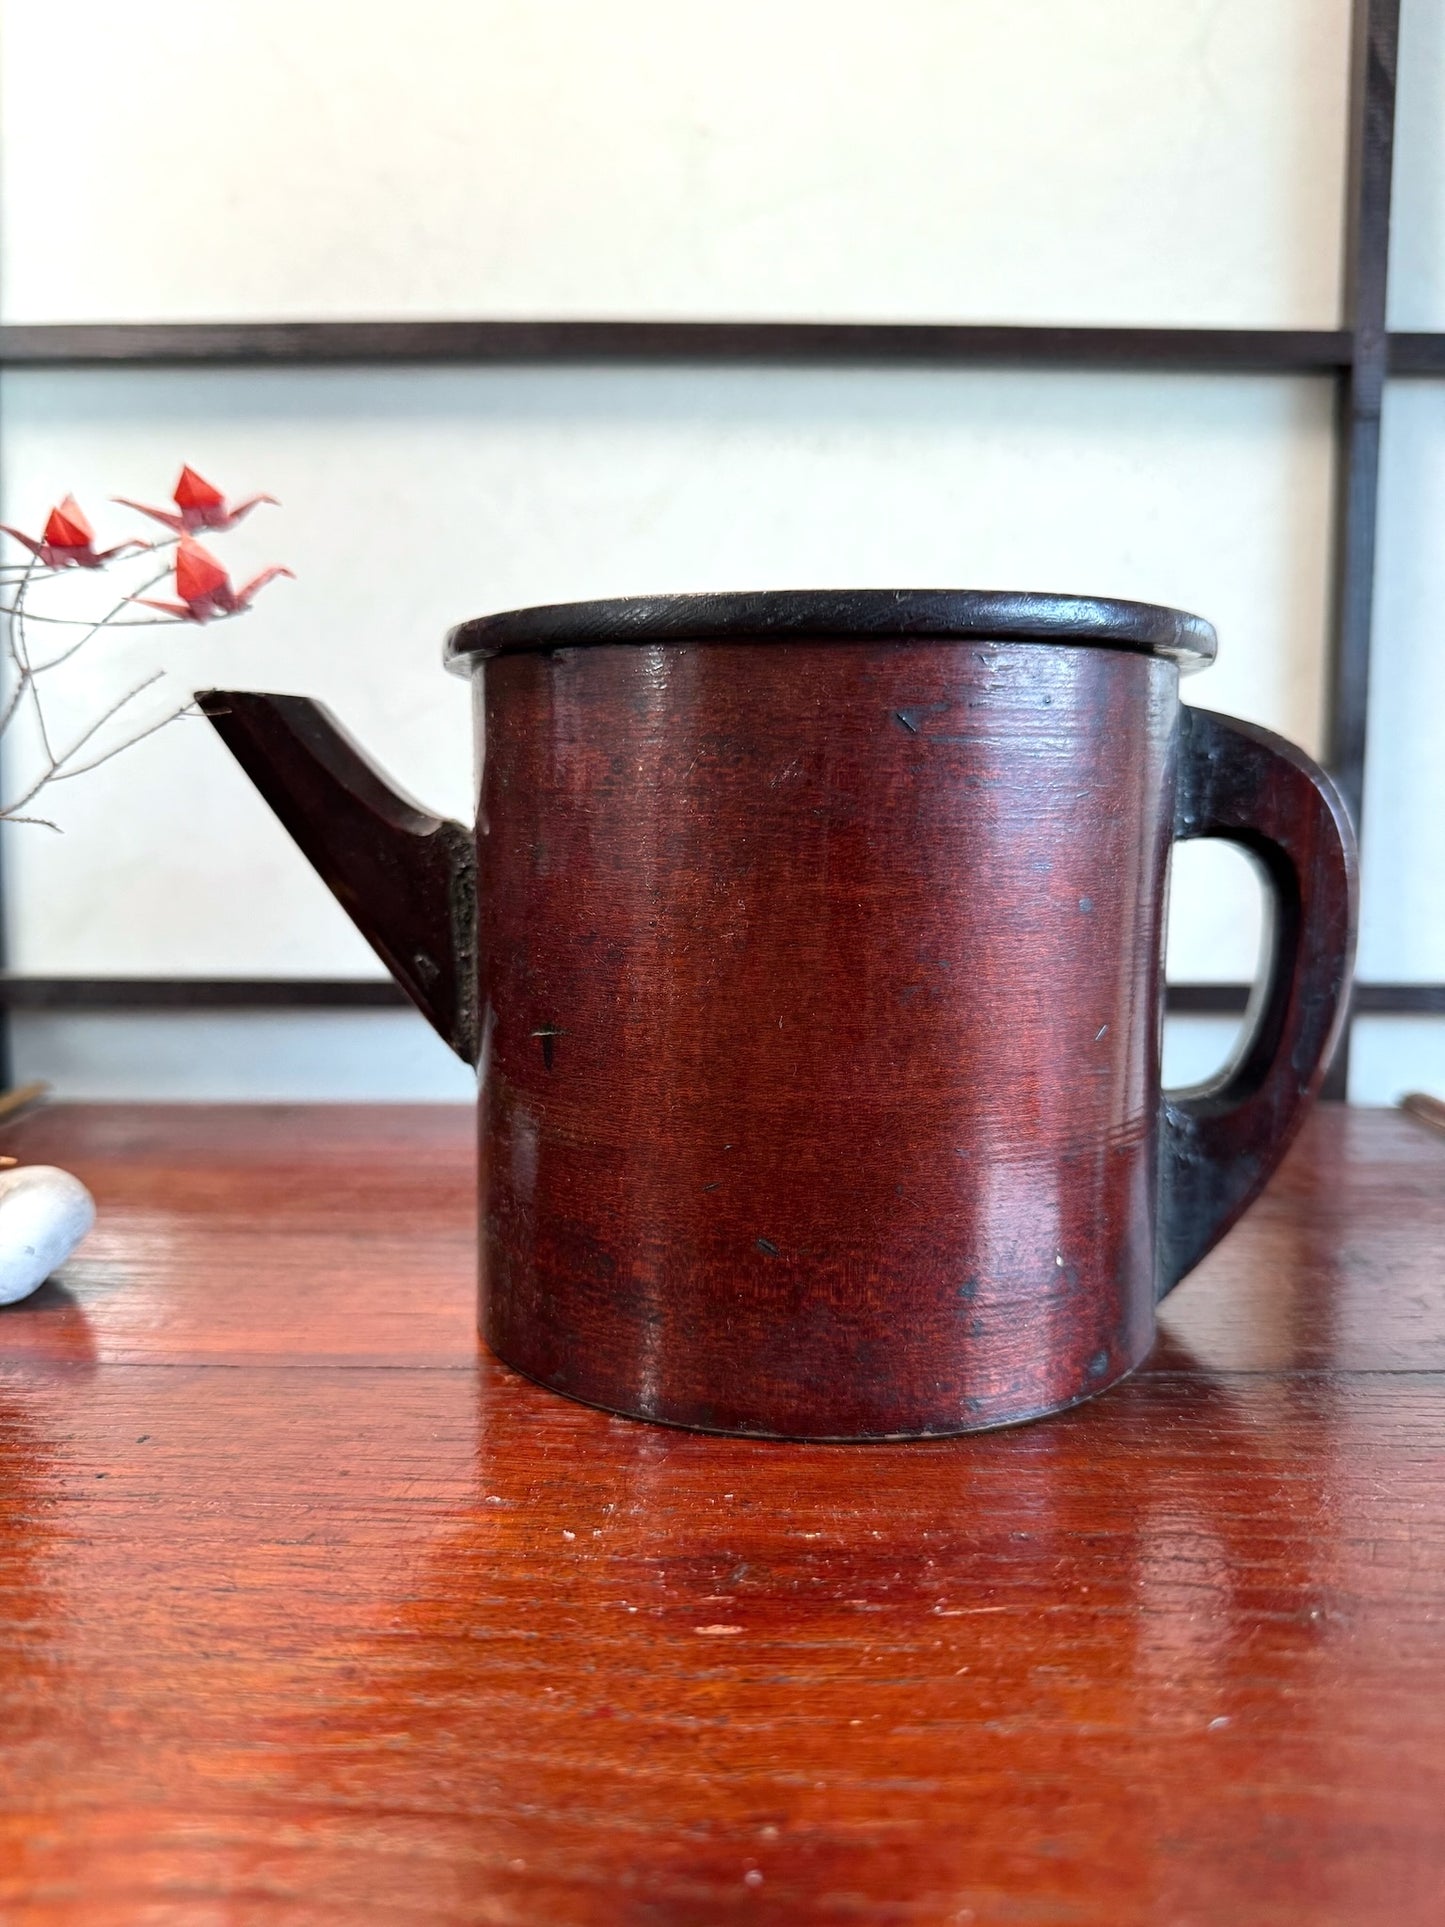 pot à eau japonais en bois, vue de profil gauche